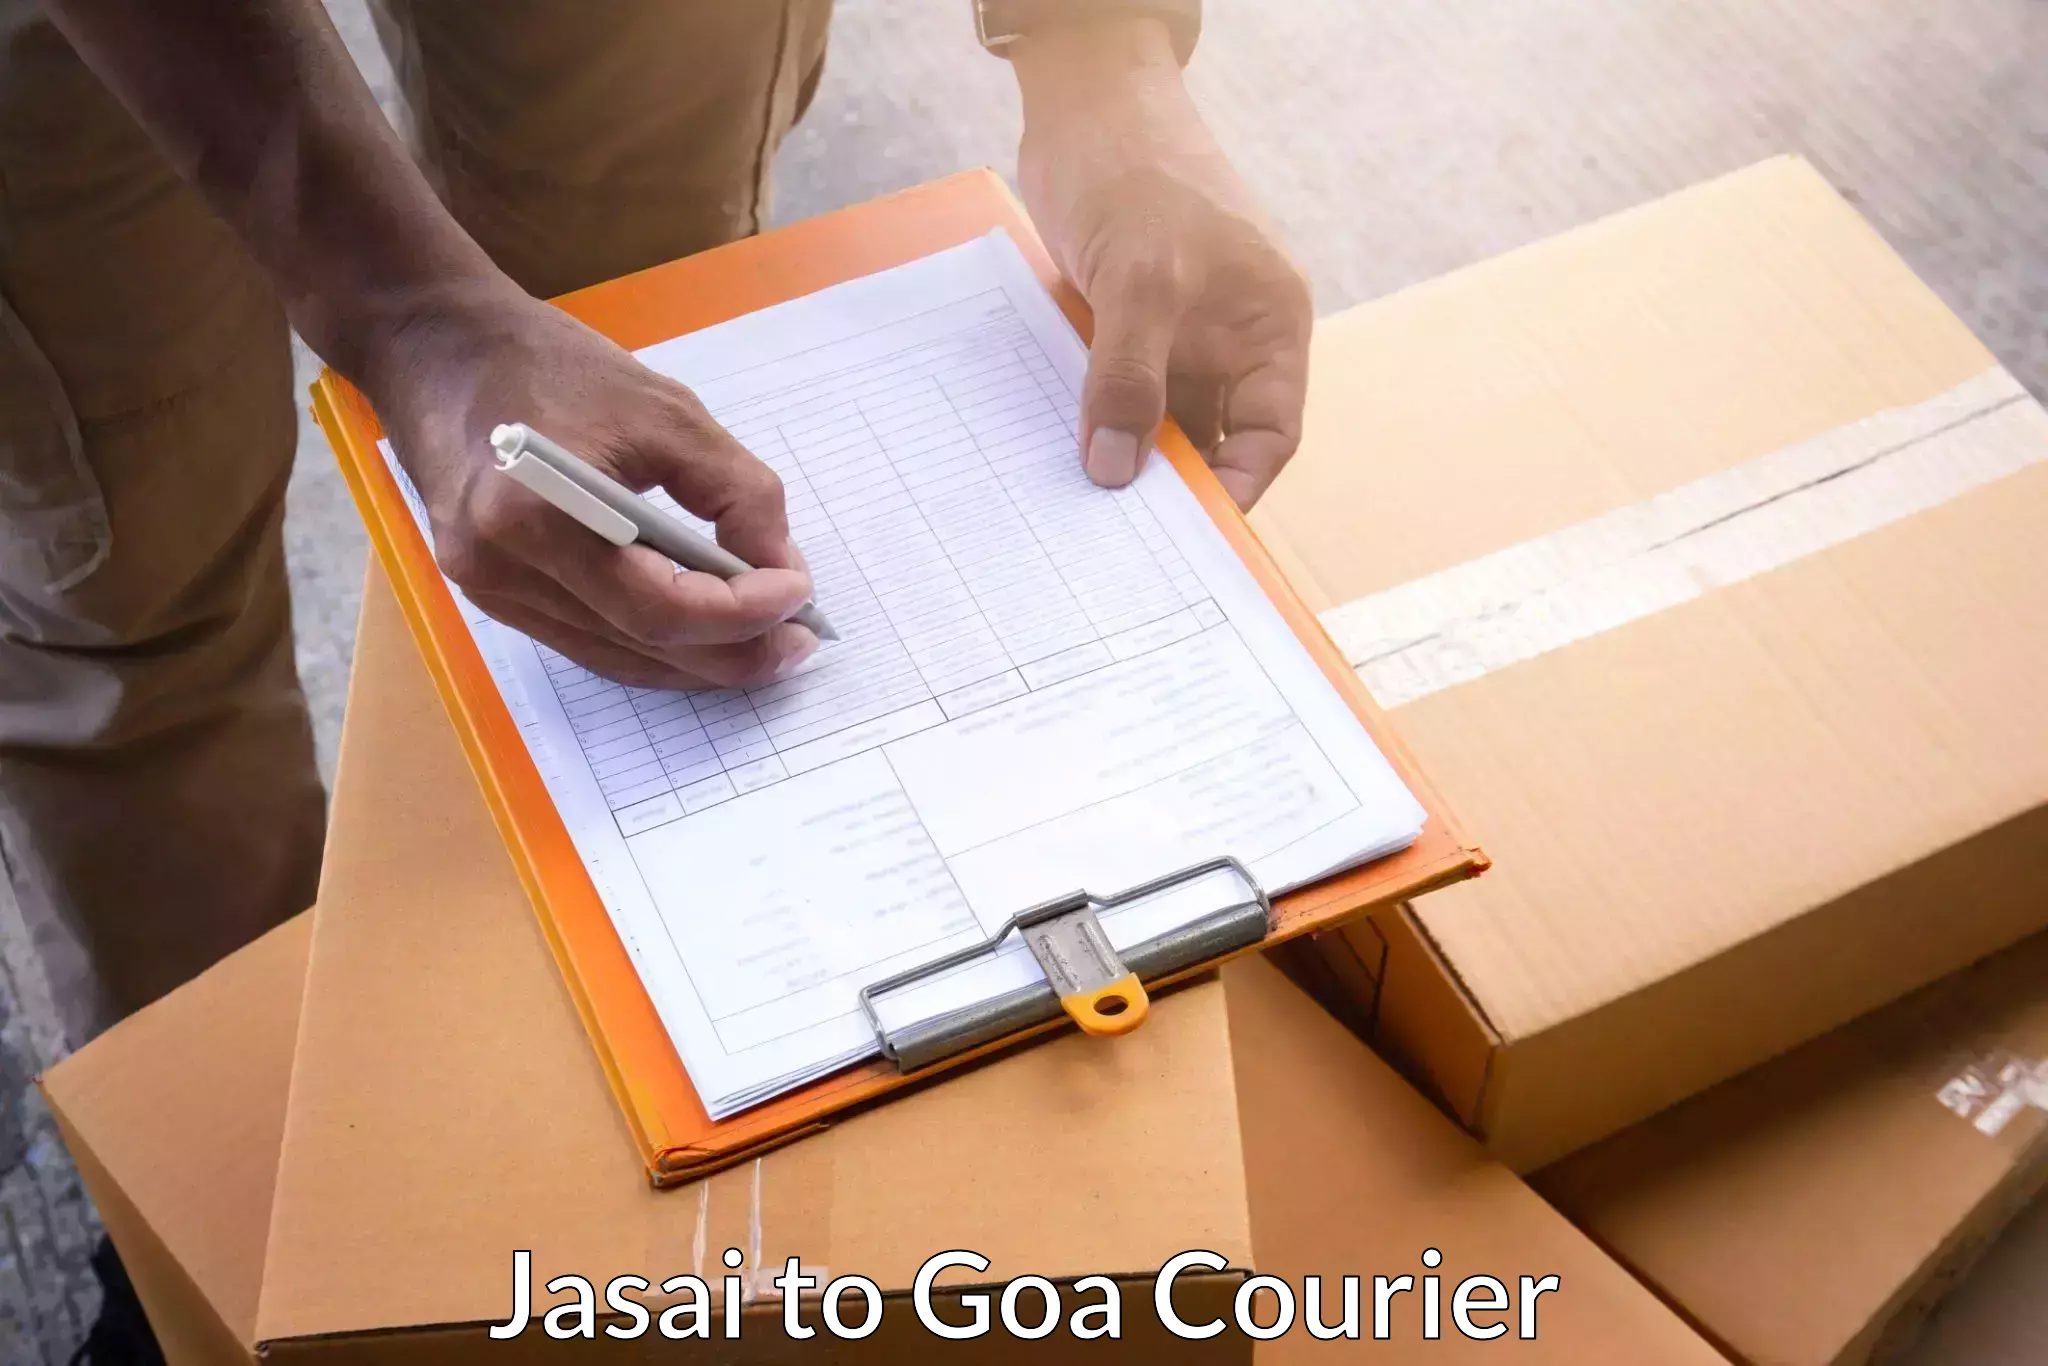 Pharmaceutical courier Jasai to Goa